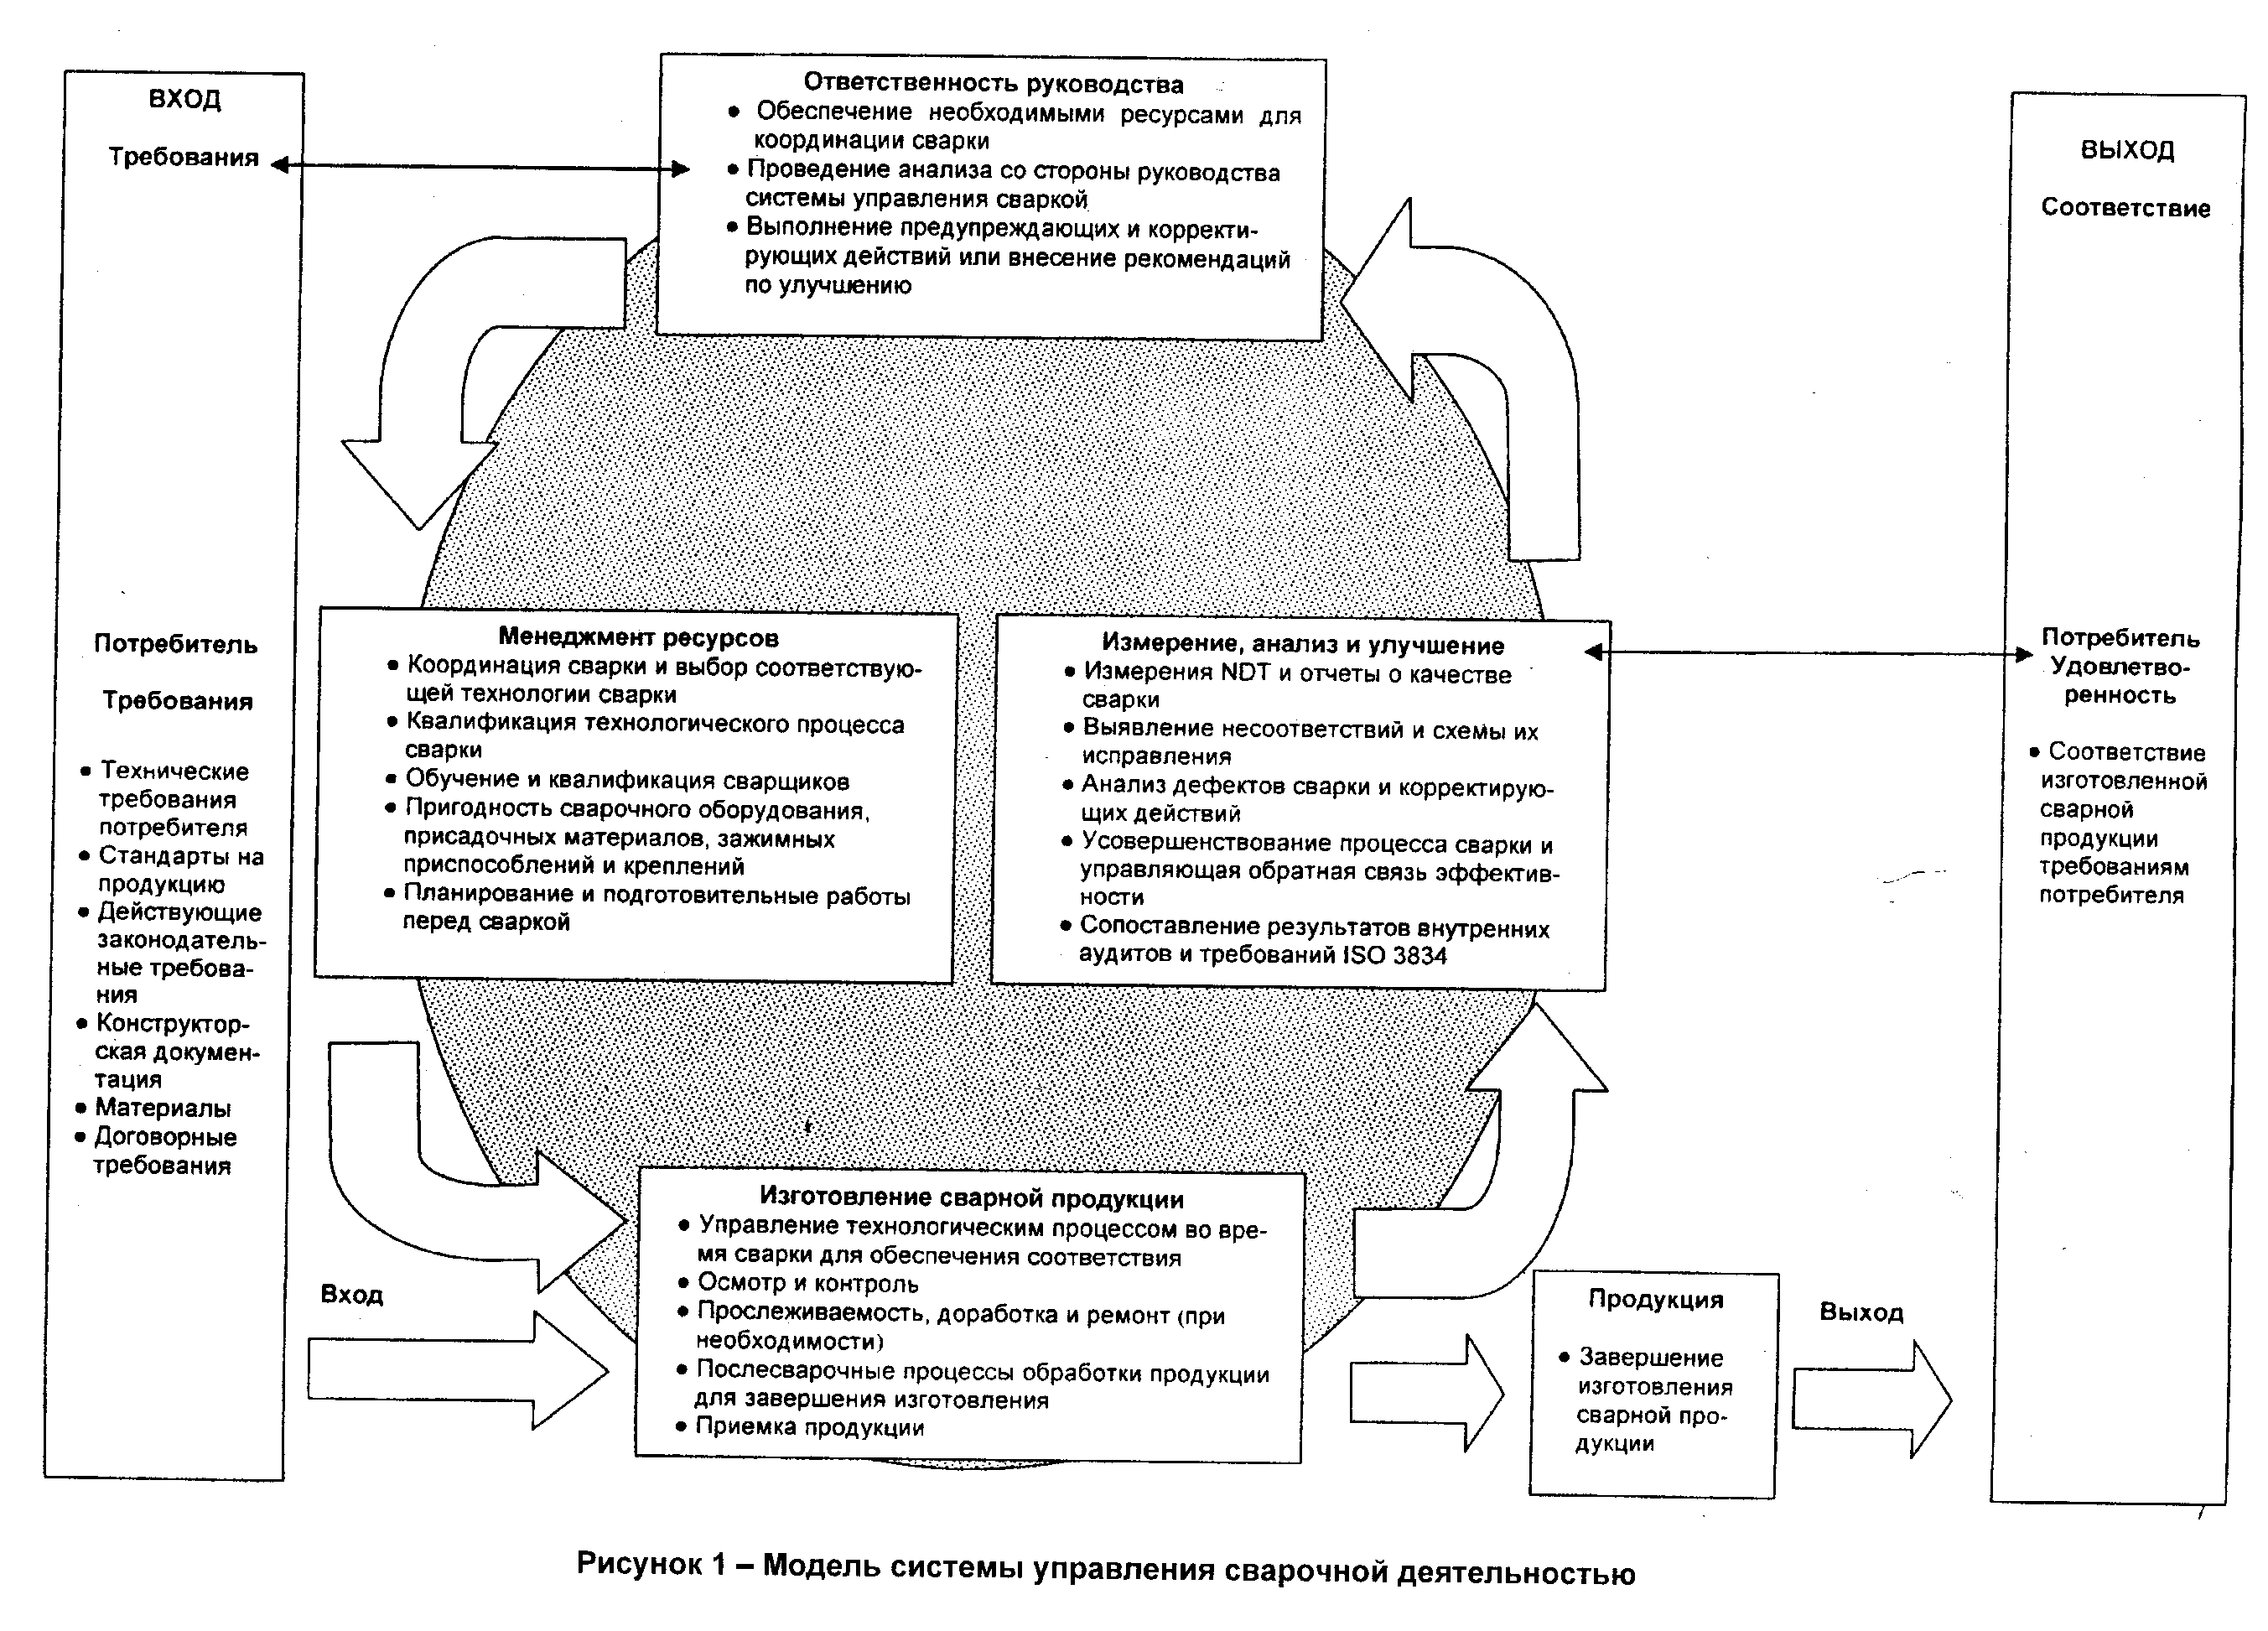 Рисунок 1 - Модель системы управления сварочной деятельностью